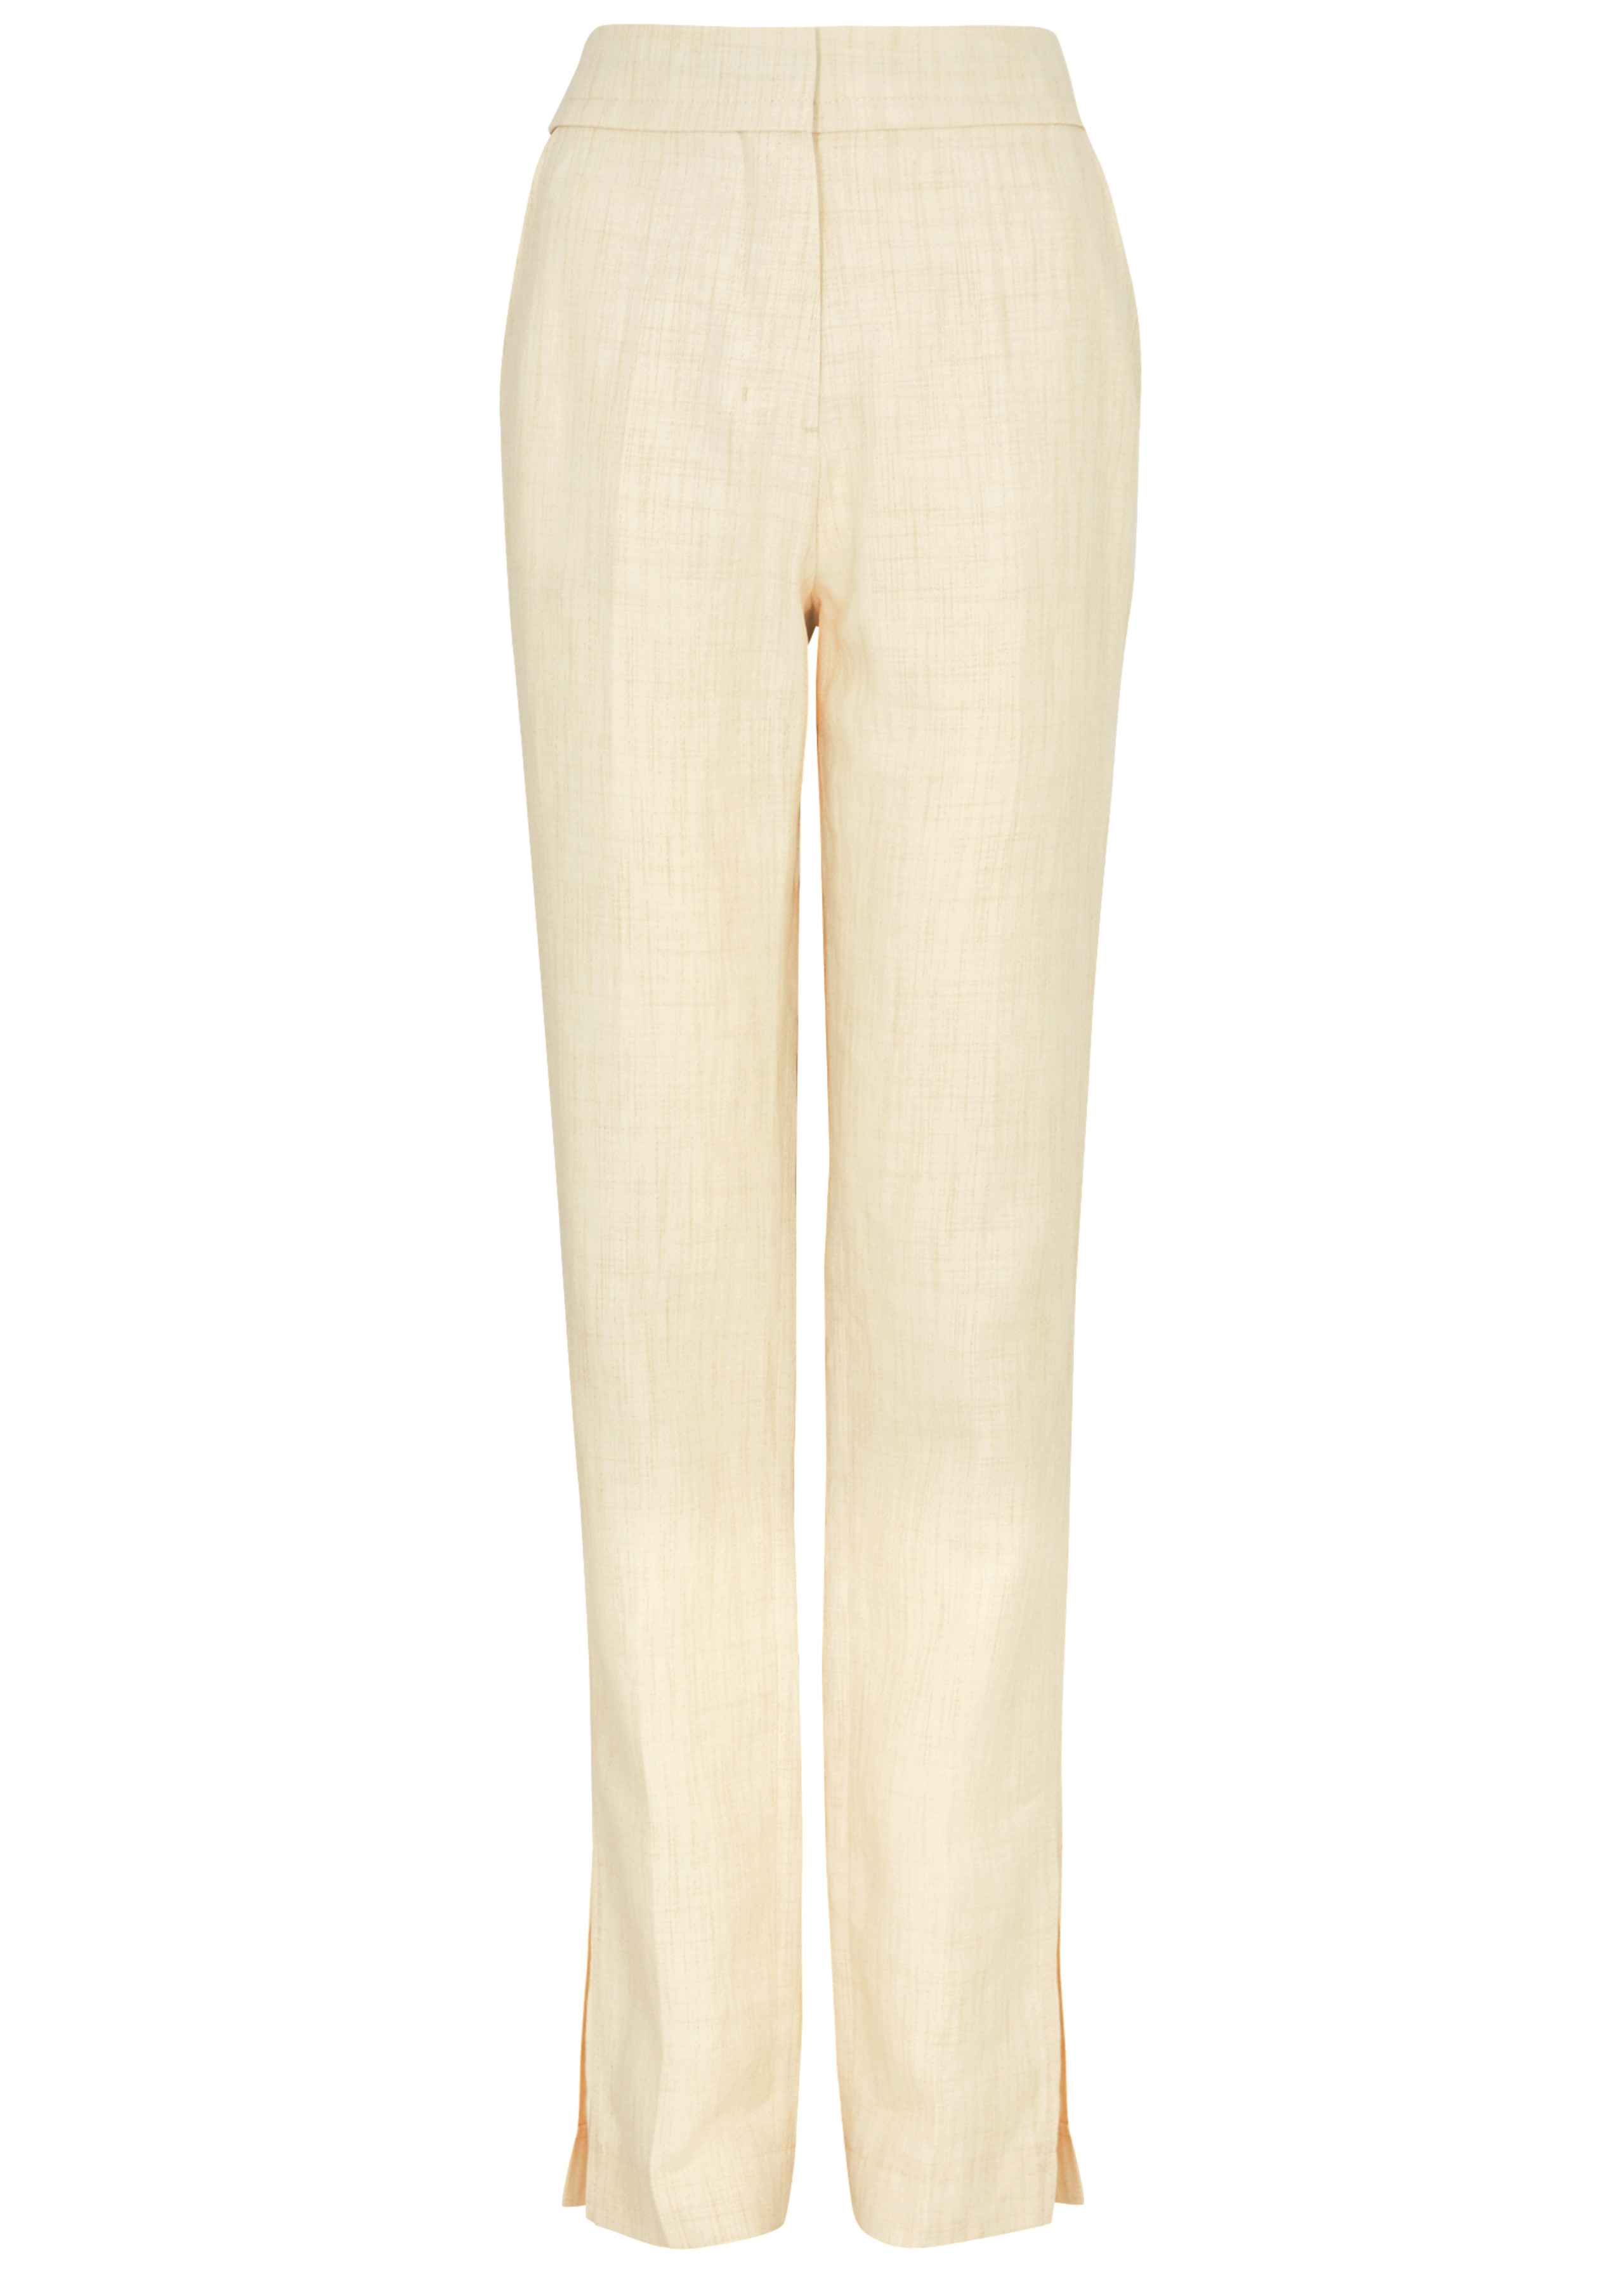 Jacquemus + Le Pantalon Tibau Linen-Blend Trousers